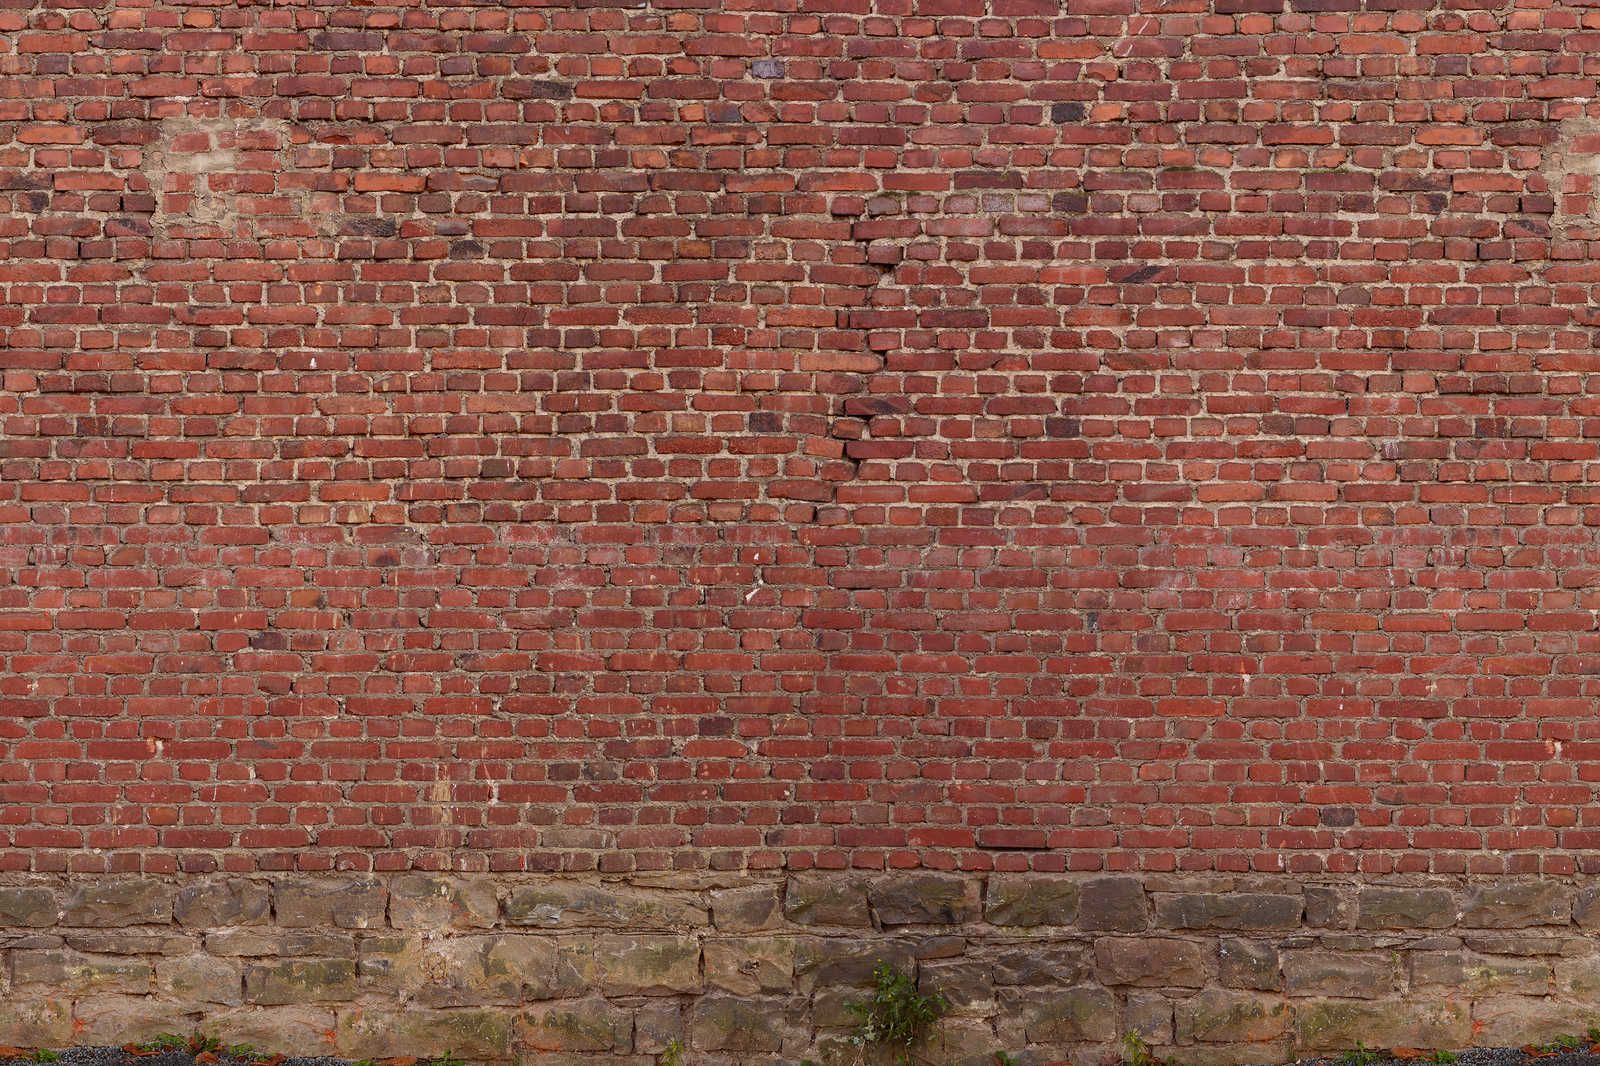             Leinwandbild rote Ziegelmauer – 0,90 m x 0,60 m
        